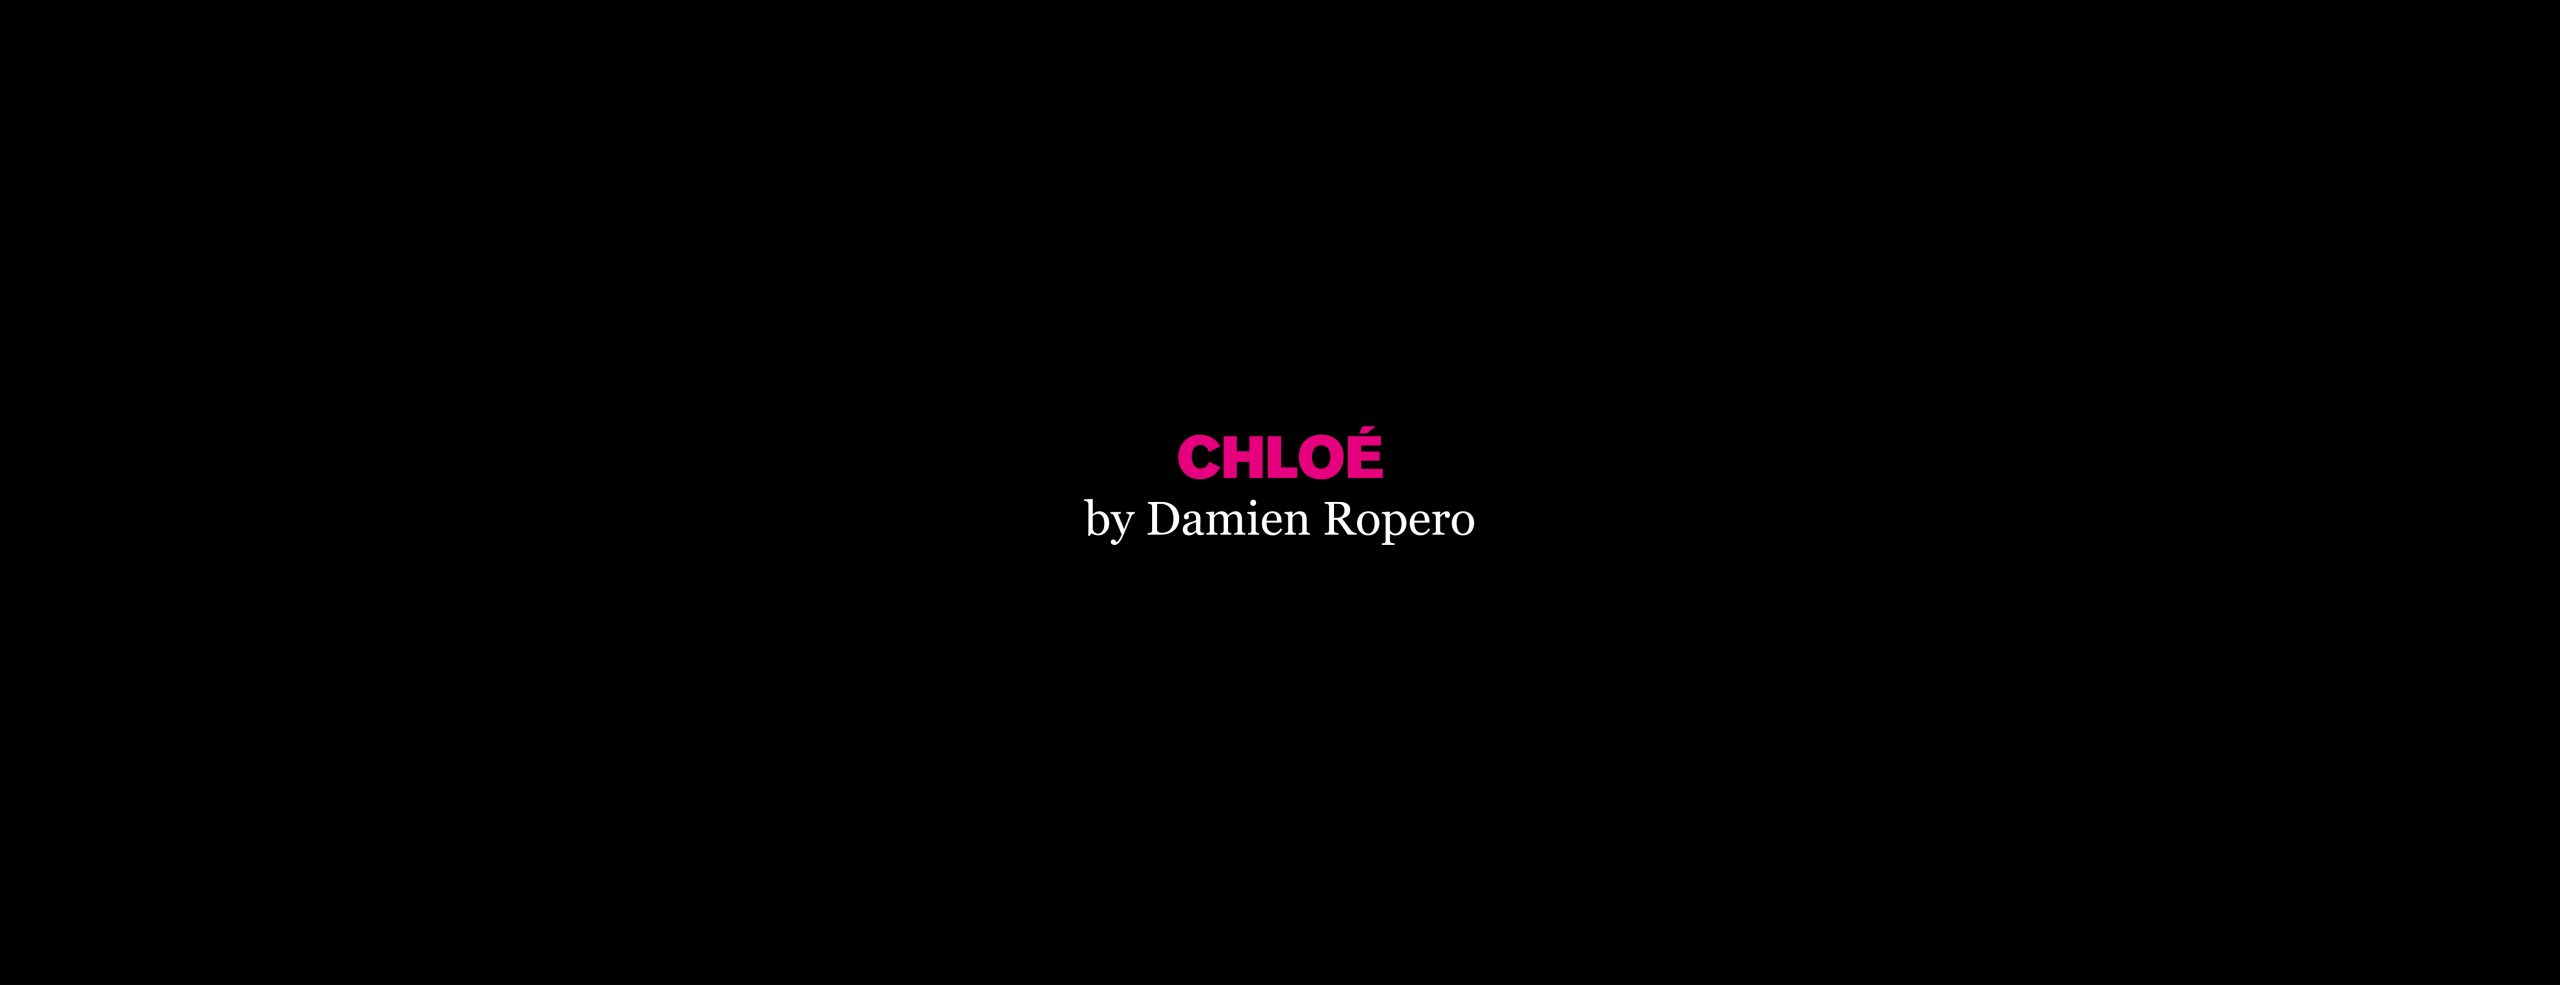 Chloe by Damien Ropero